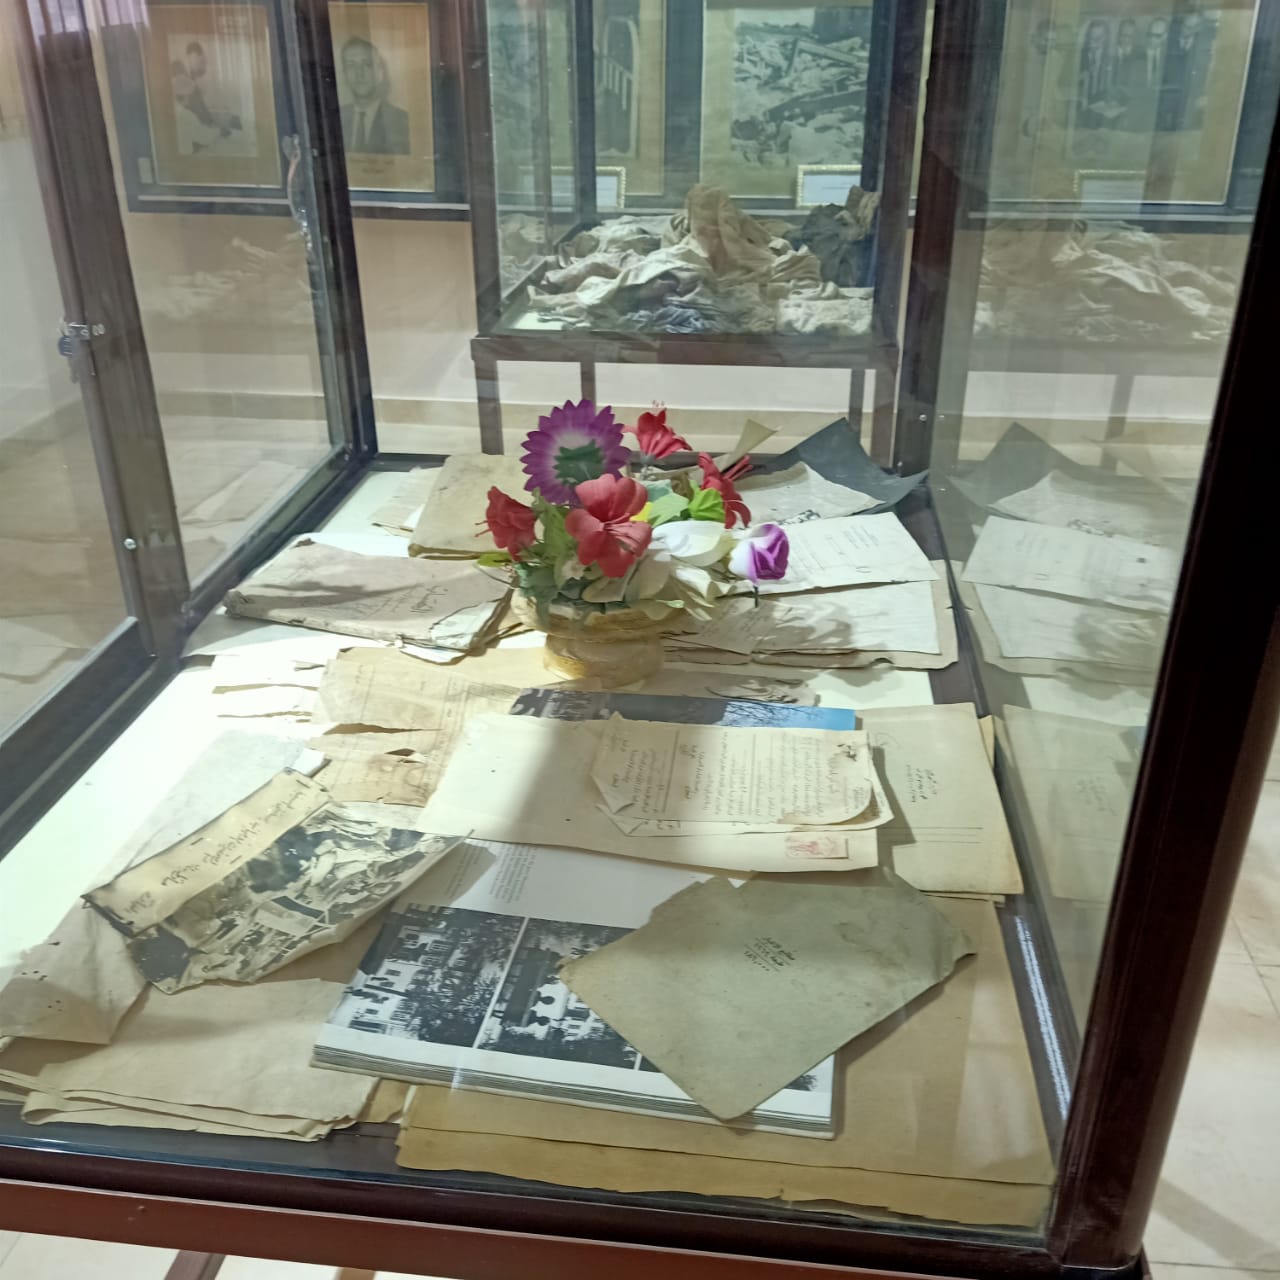  كتب وكراسات وملابس شهداء مذبحة بحر البقر بمتحف المدرسة (1)